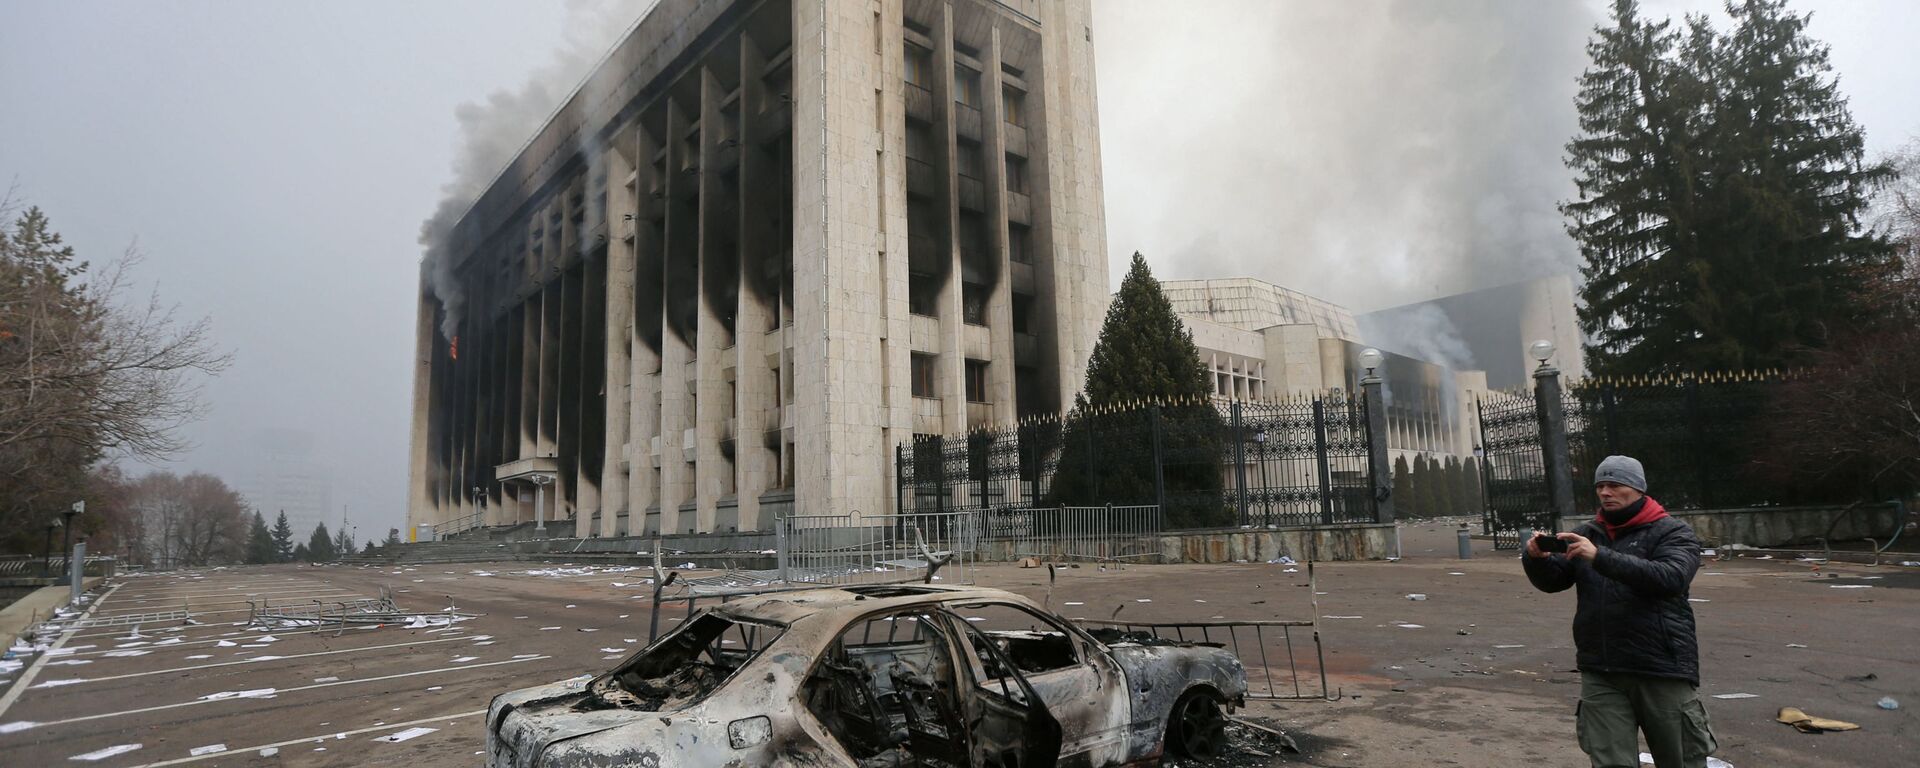 Carro queimado em frente à prefeitura após os protestos em Almaty, no Cazaquistão - Sputnik Brasil, 1920, 17.01.2022